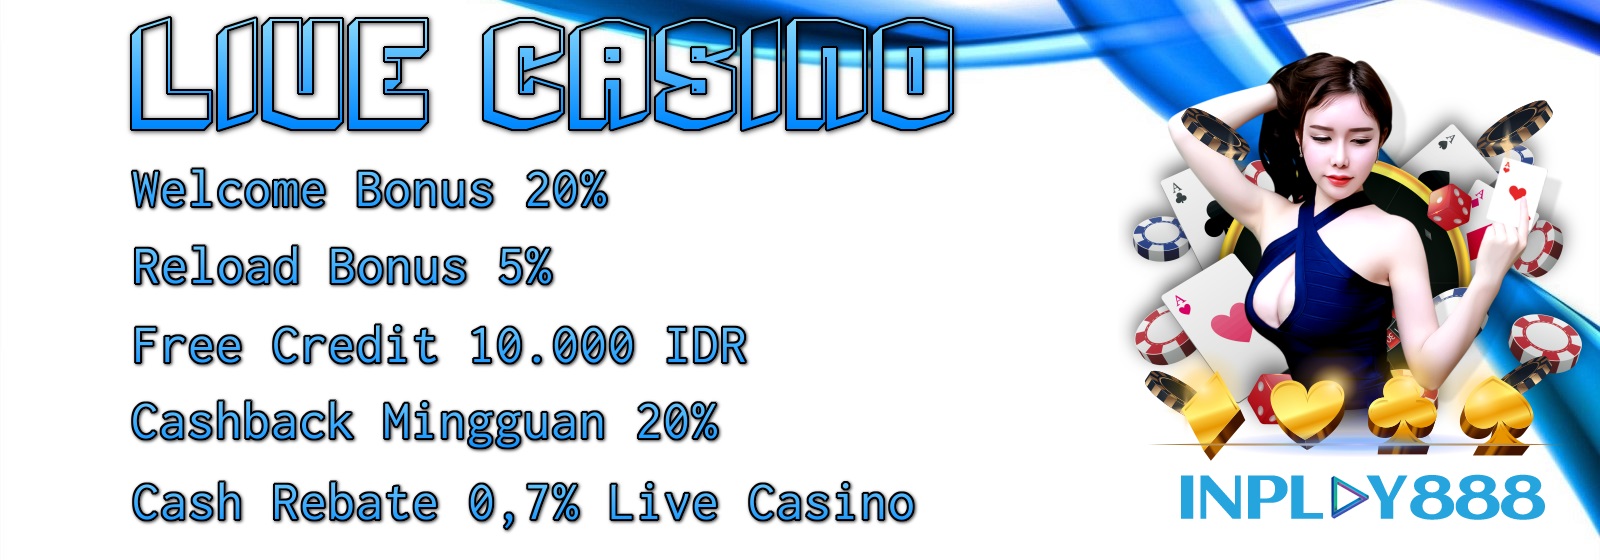 Casino Inplay888